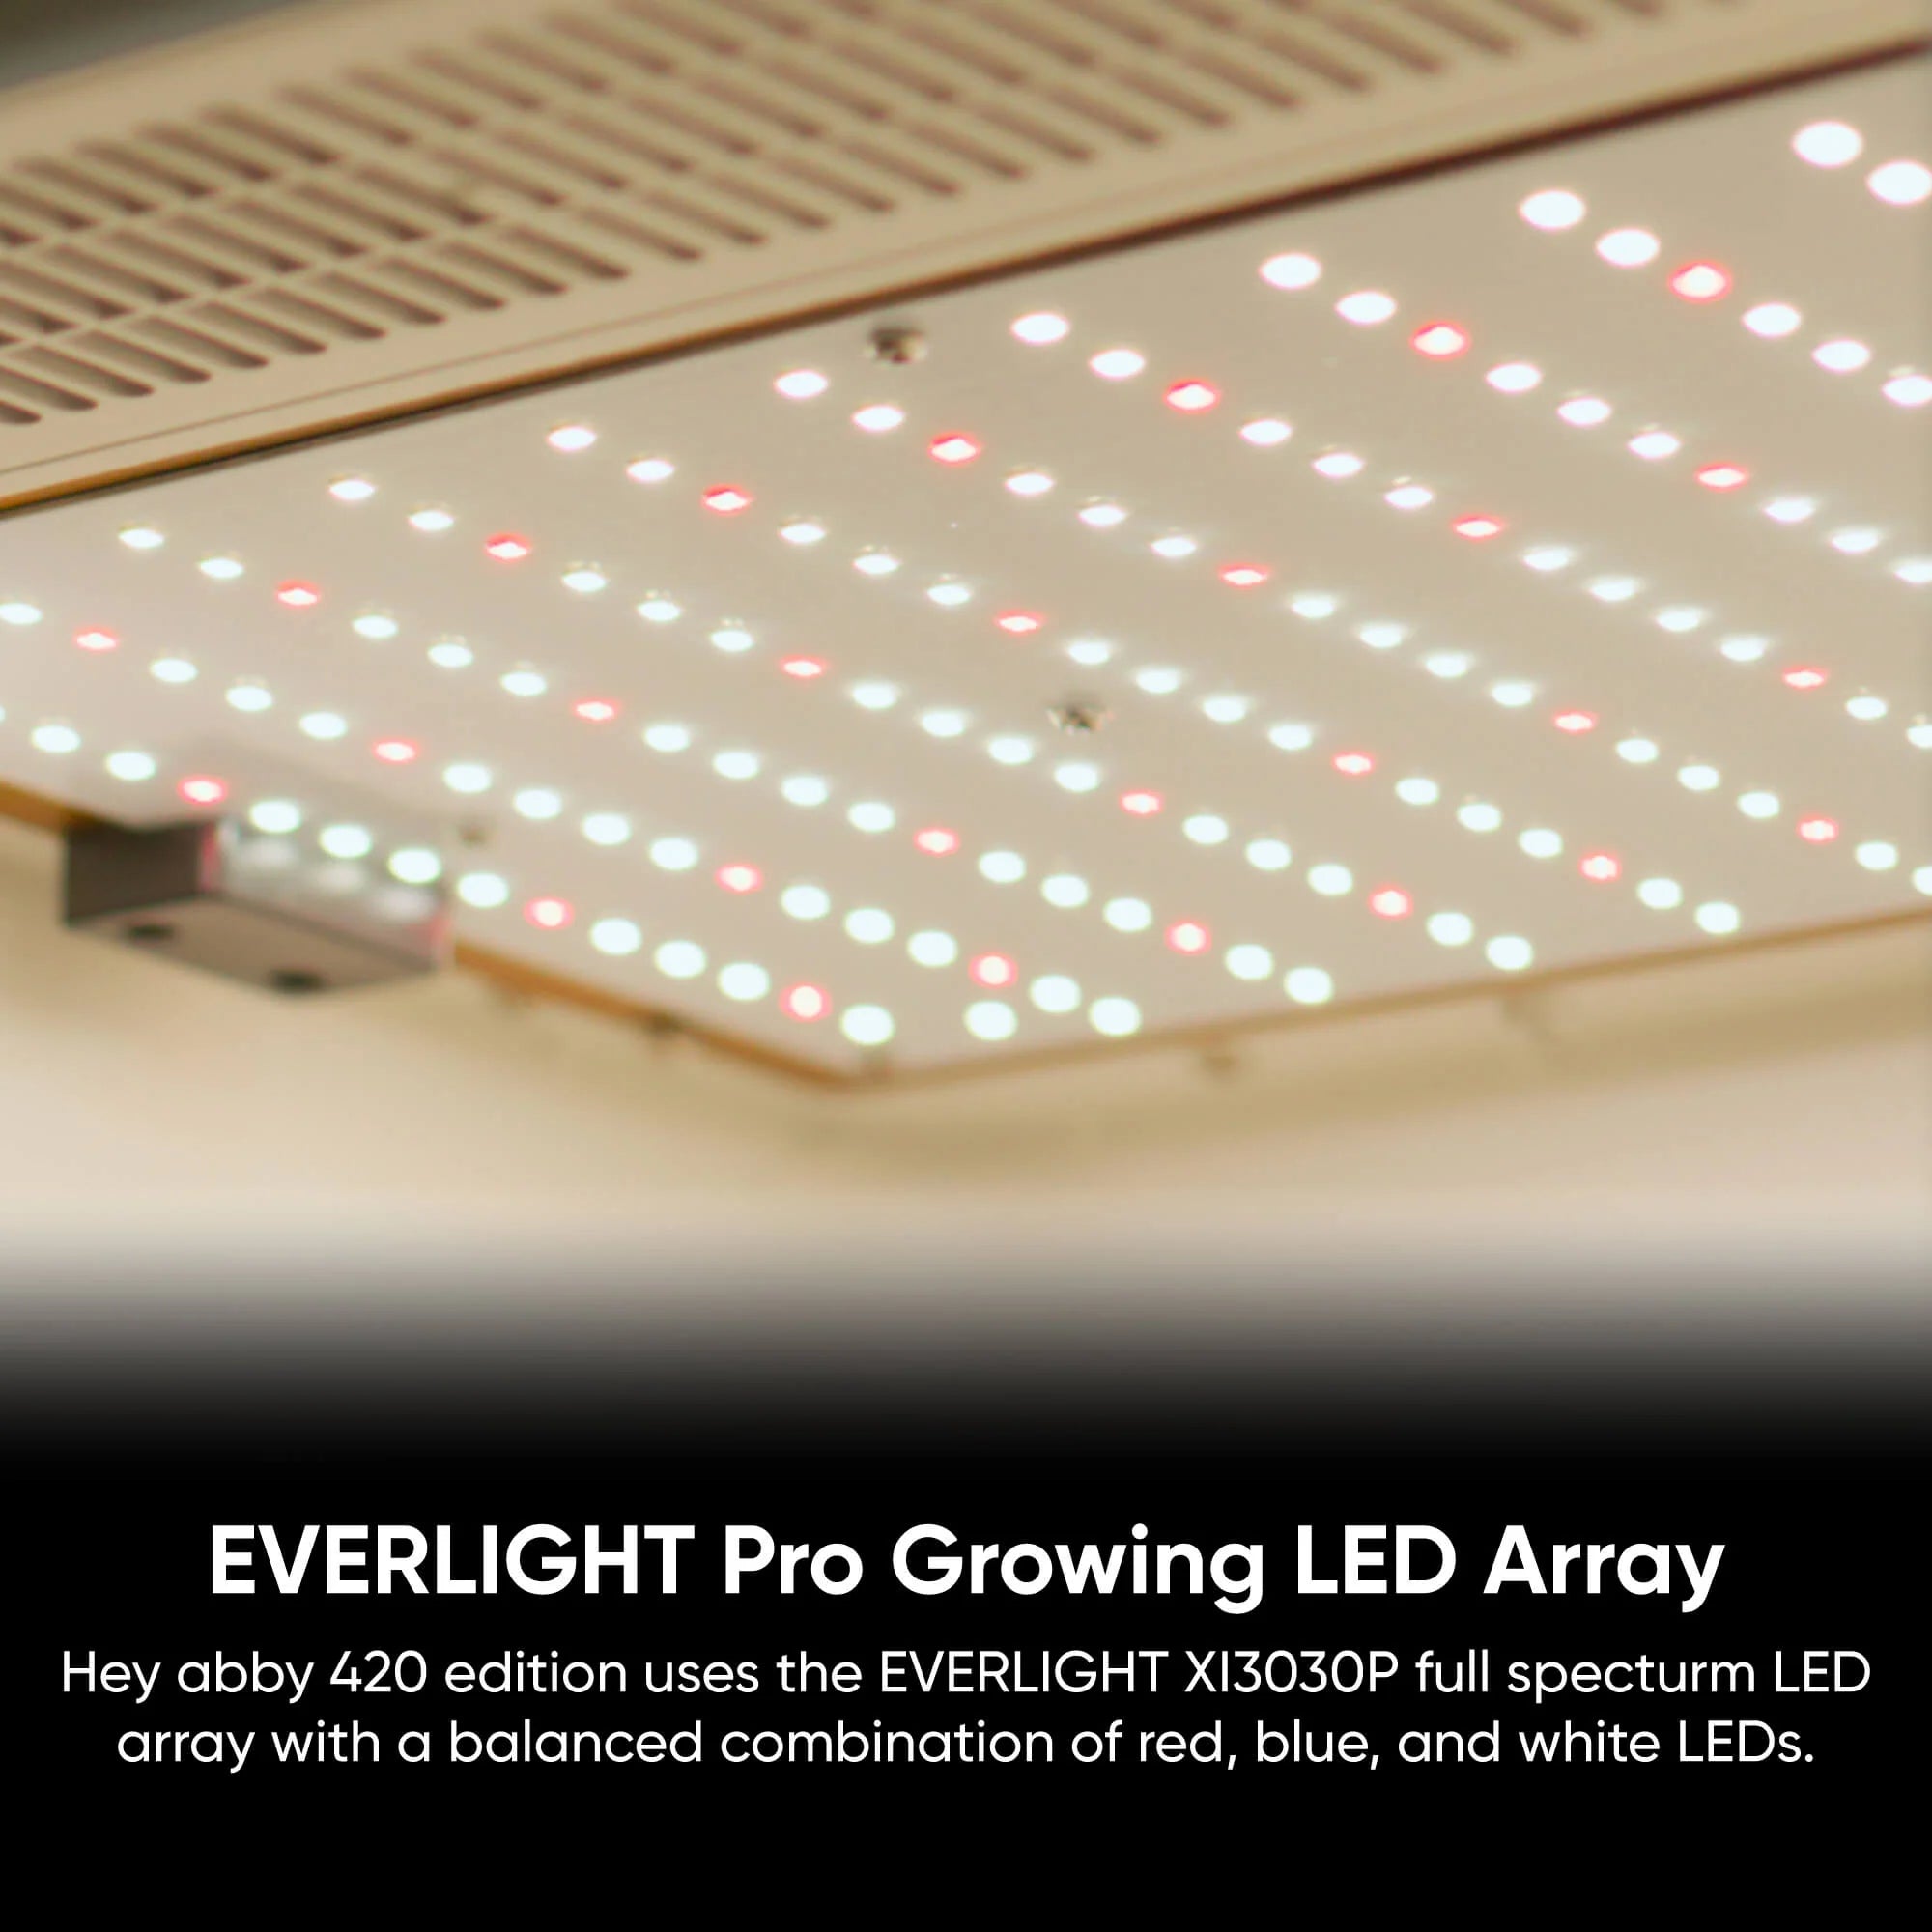 hey abby 420 edition Everlight LED grow light